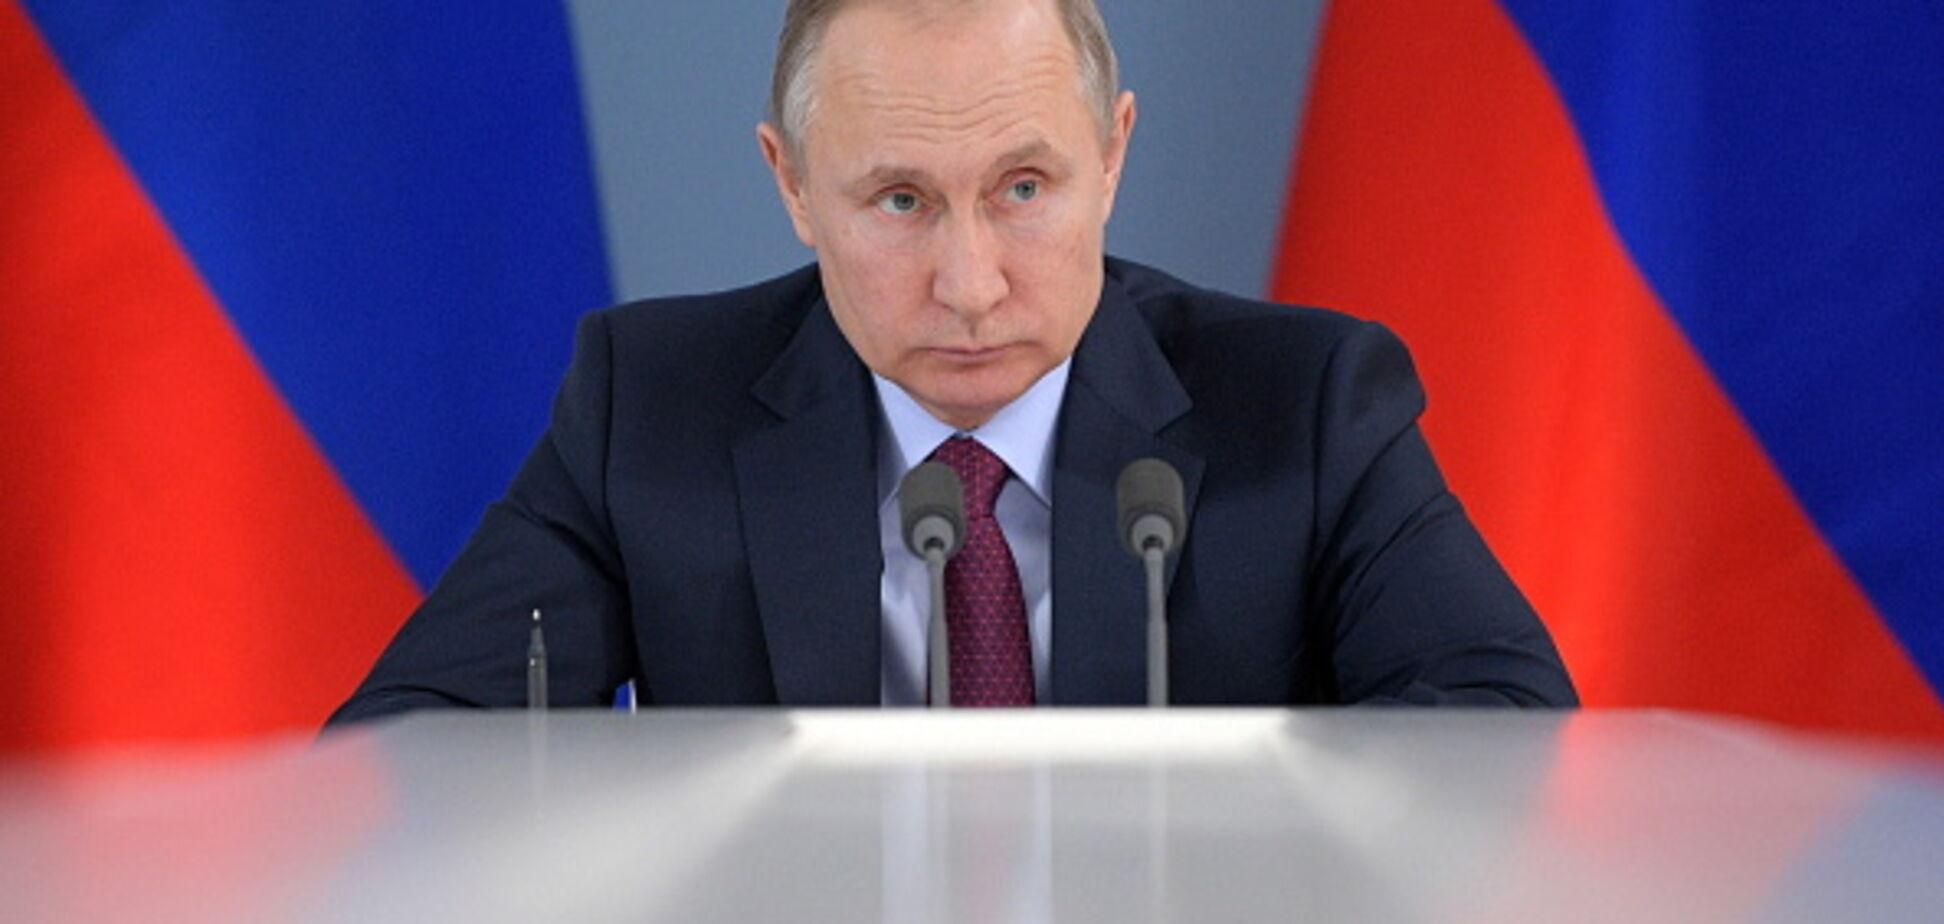 Побьет все рекорды: социологи обнародовали прогноз на выборы Путина